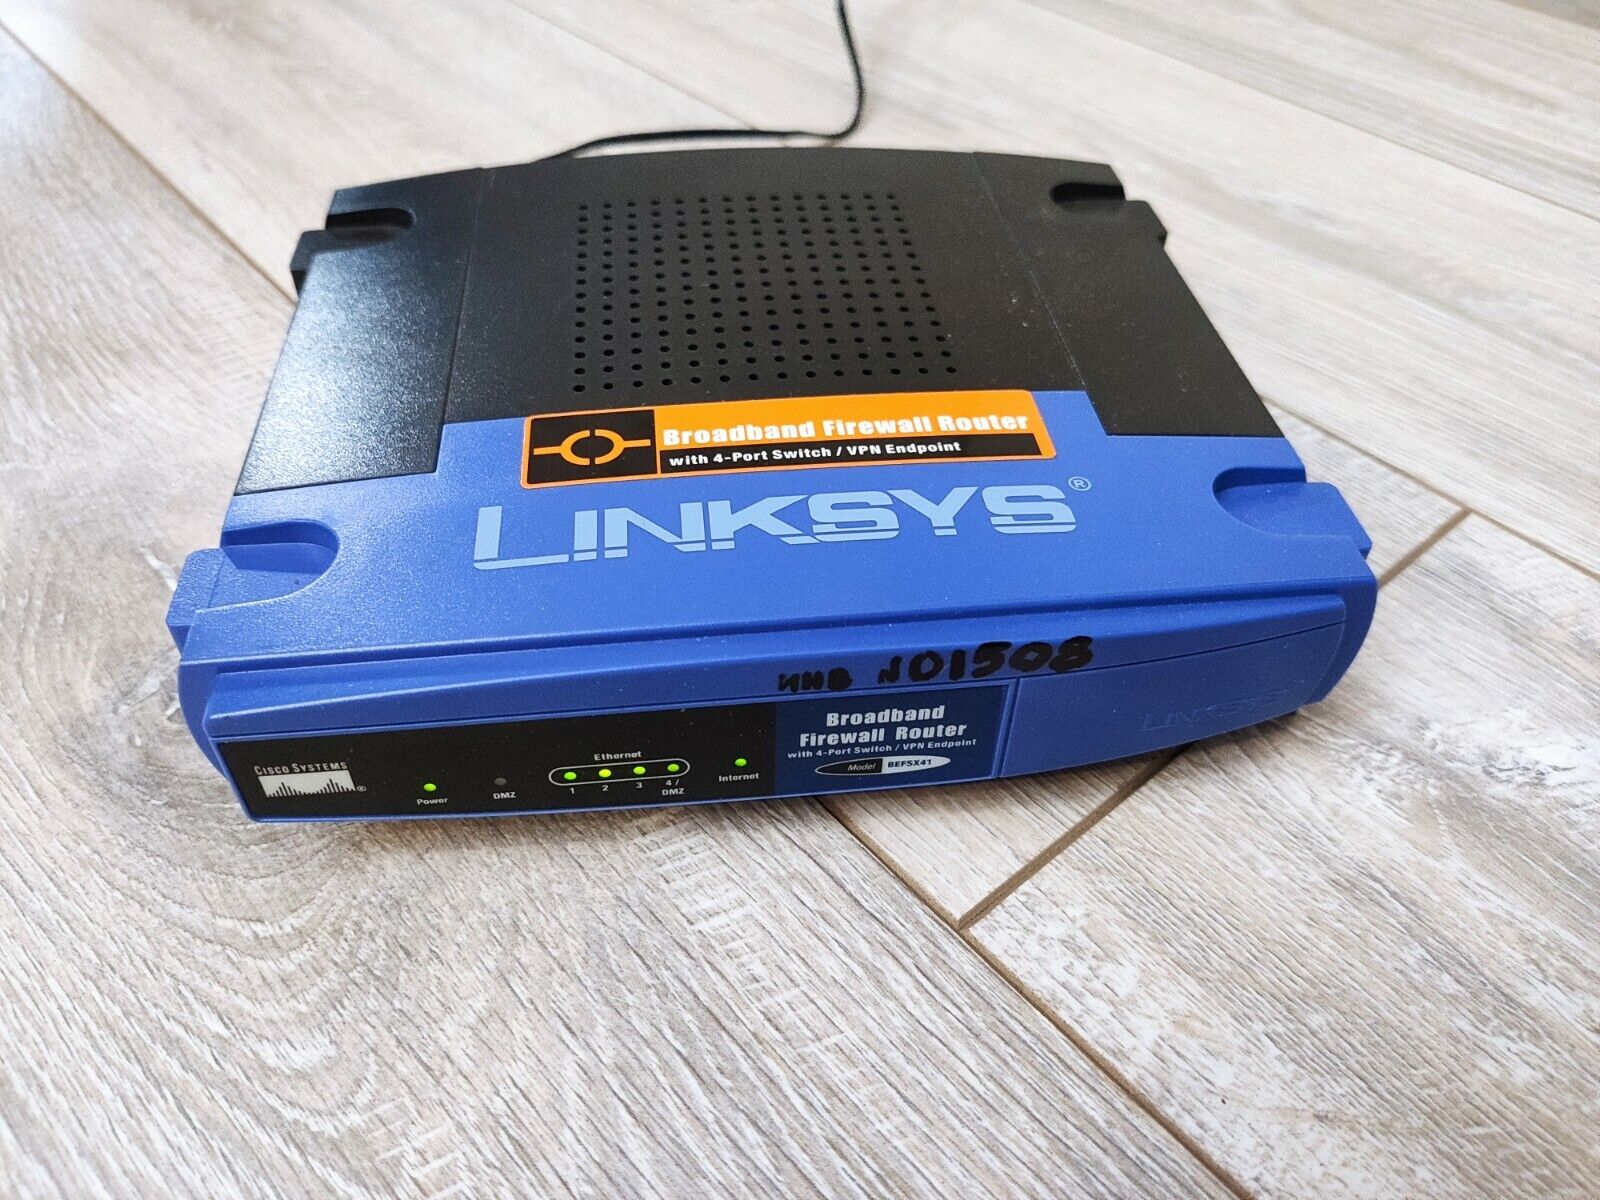 Cisco Linksys BEFSX41 Broadband Firewall Router 4-Port 10/100 (BEFSX41)